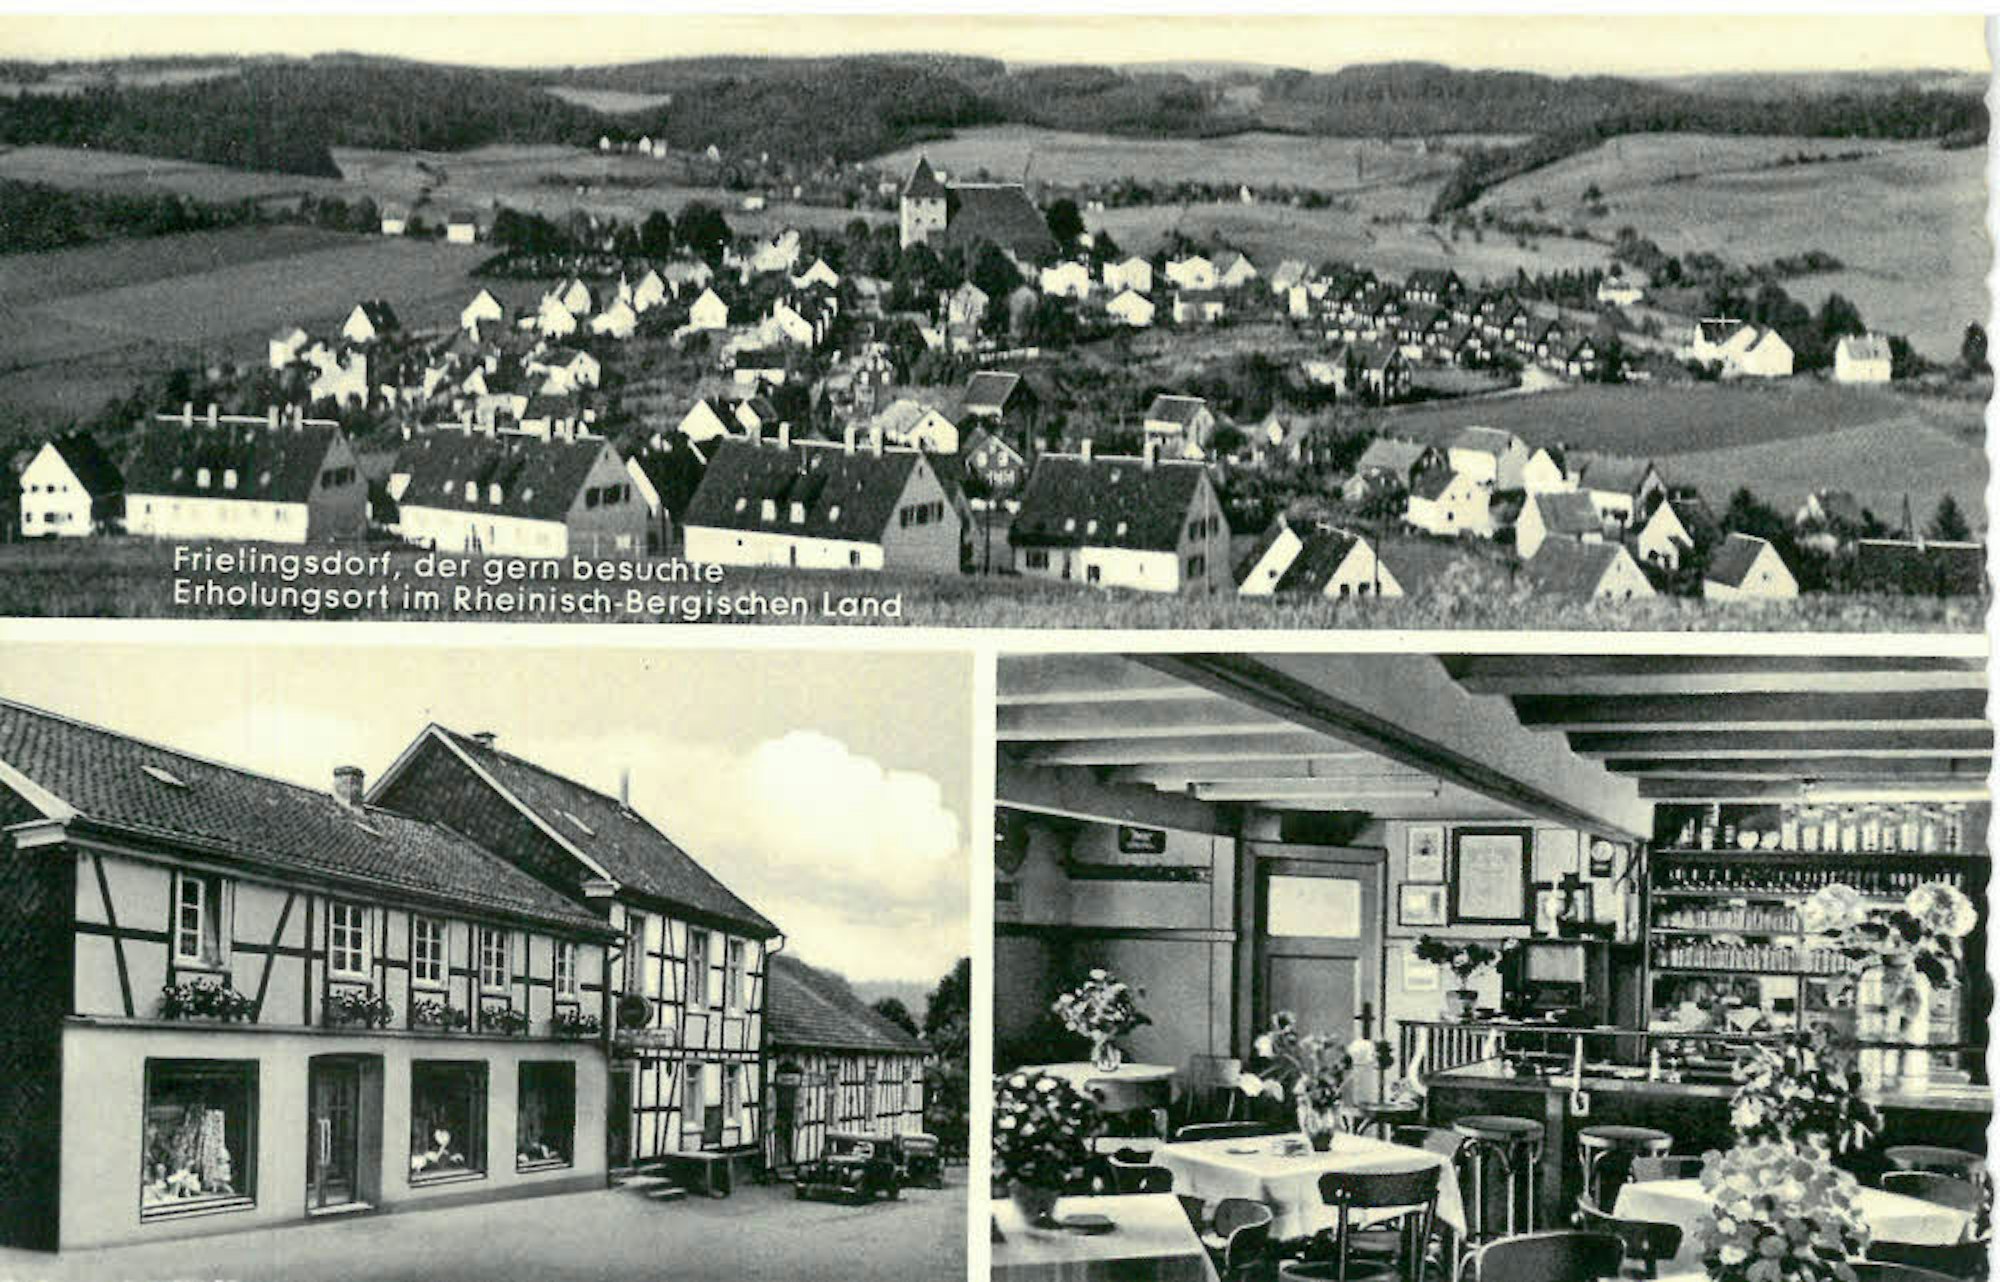  Eine alte Postkarte von Frielingsdorf zeigt rechts hinter der Kirche die „Luftwaffensiedlung.